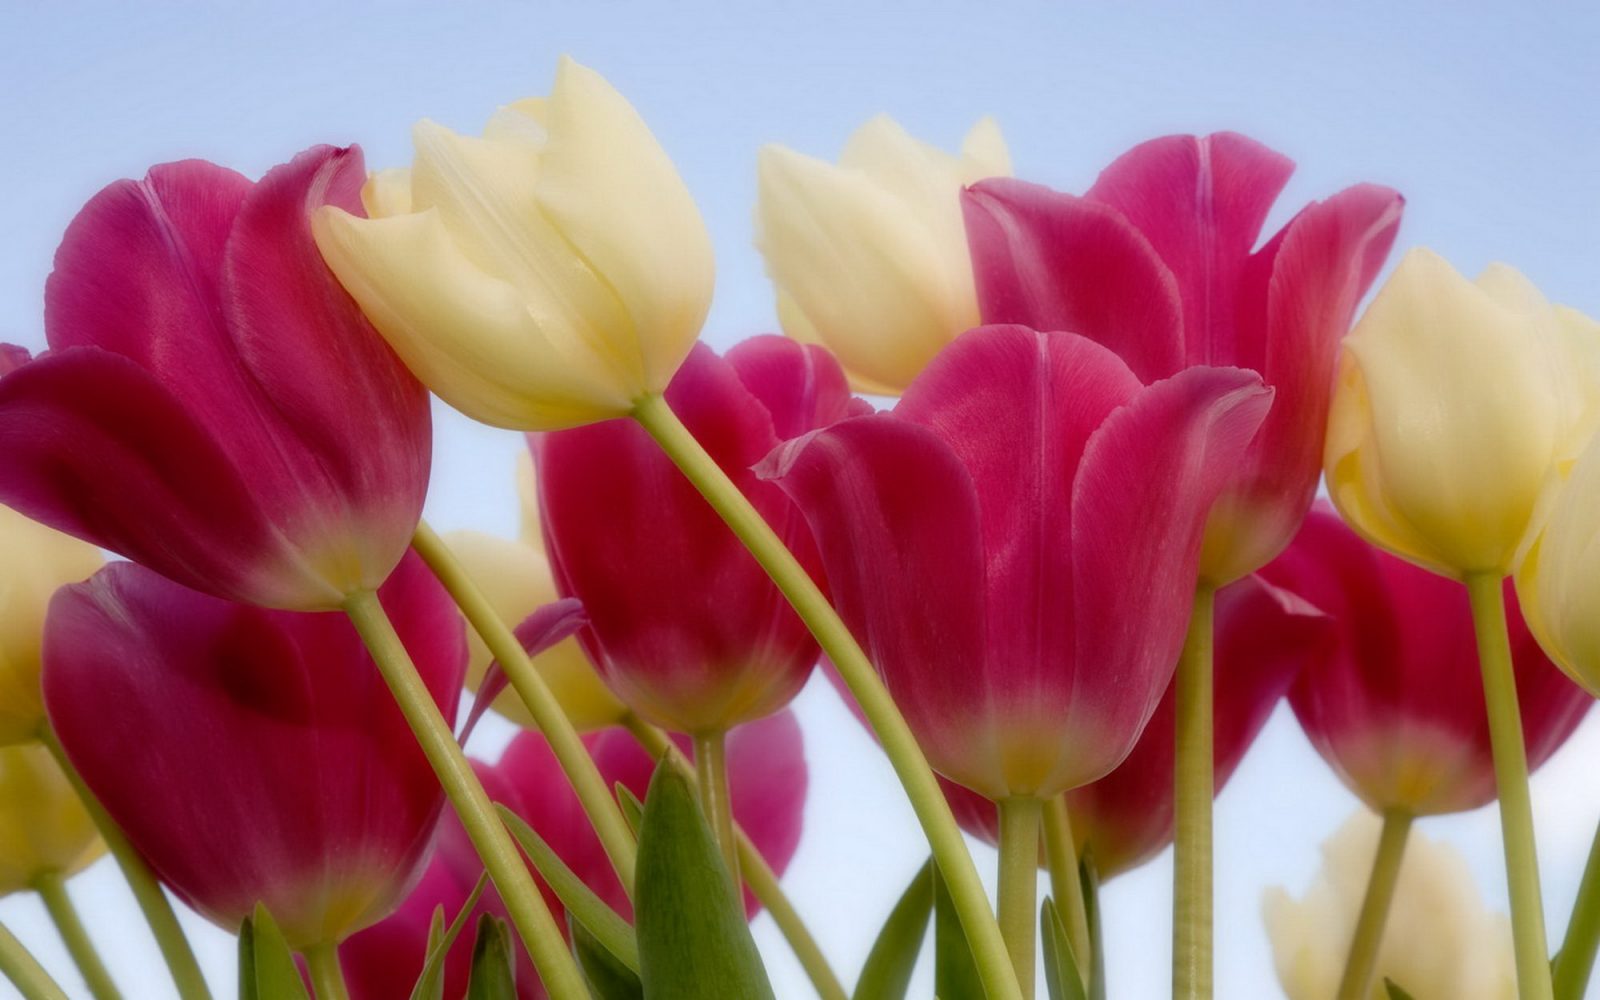 Fotos de tulipanes